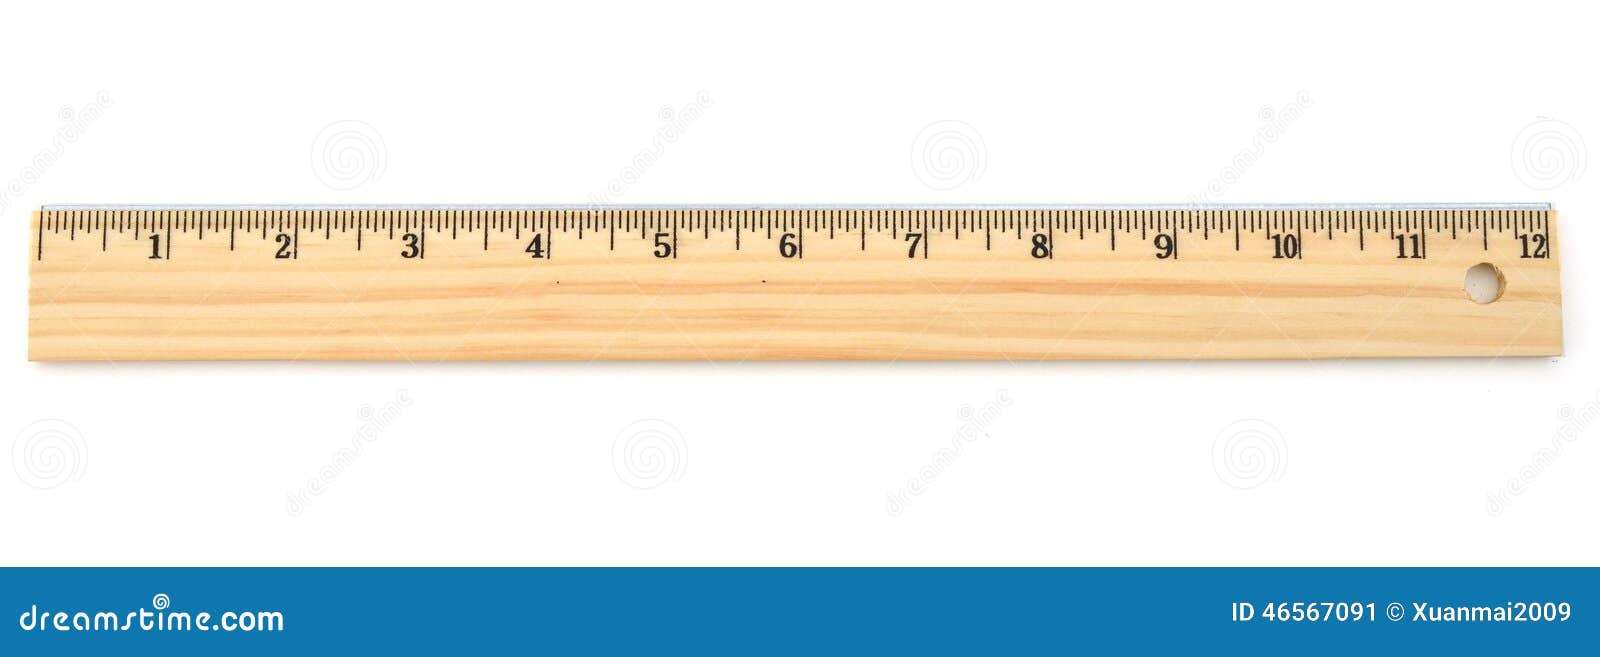 inch-ruler-standard-lifetime-46567091.jpg